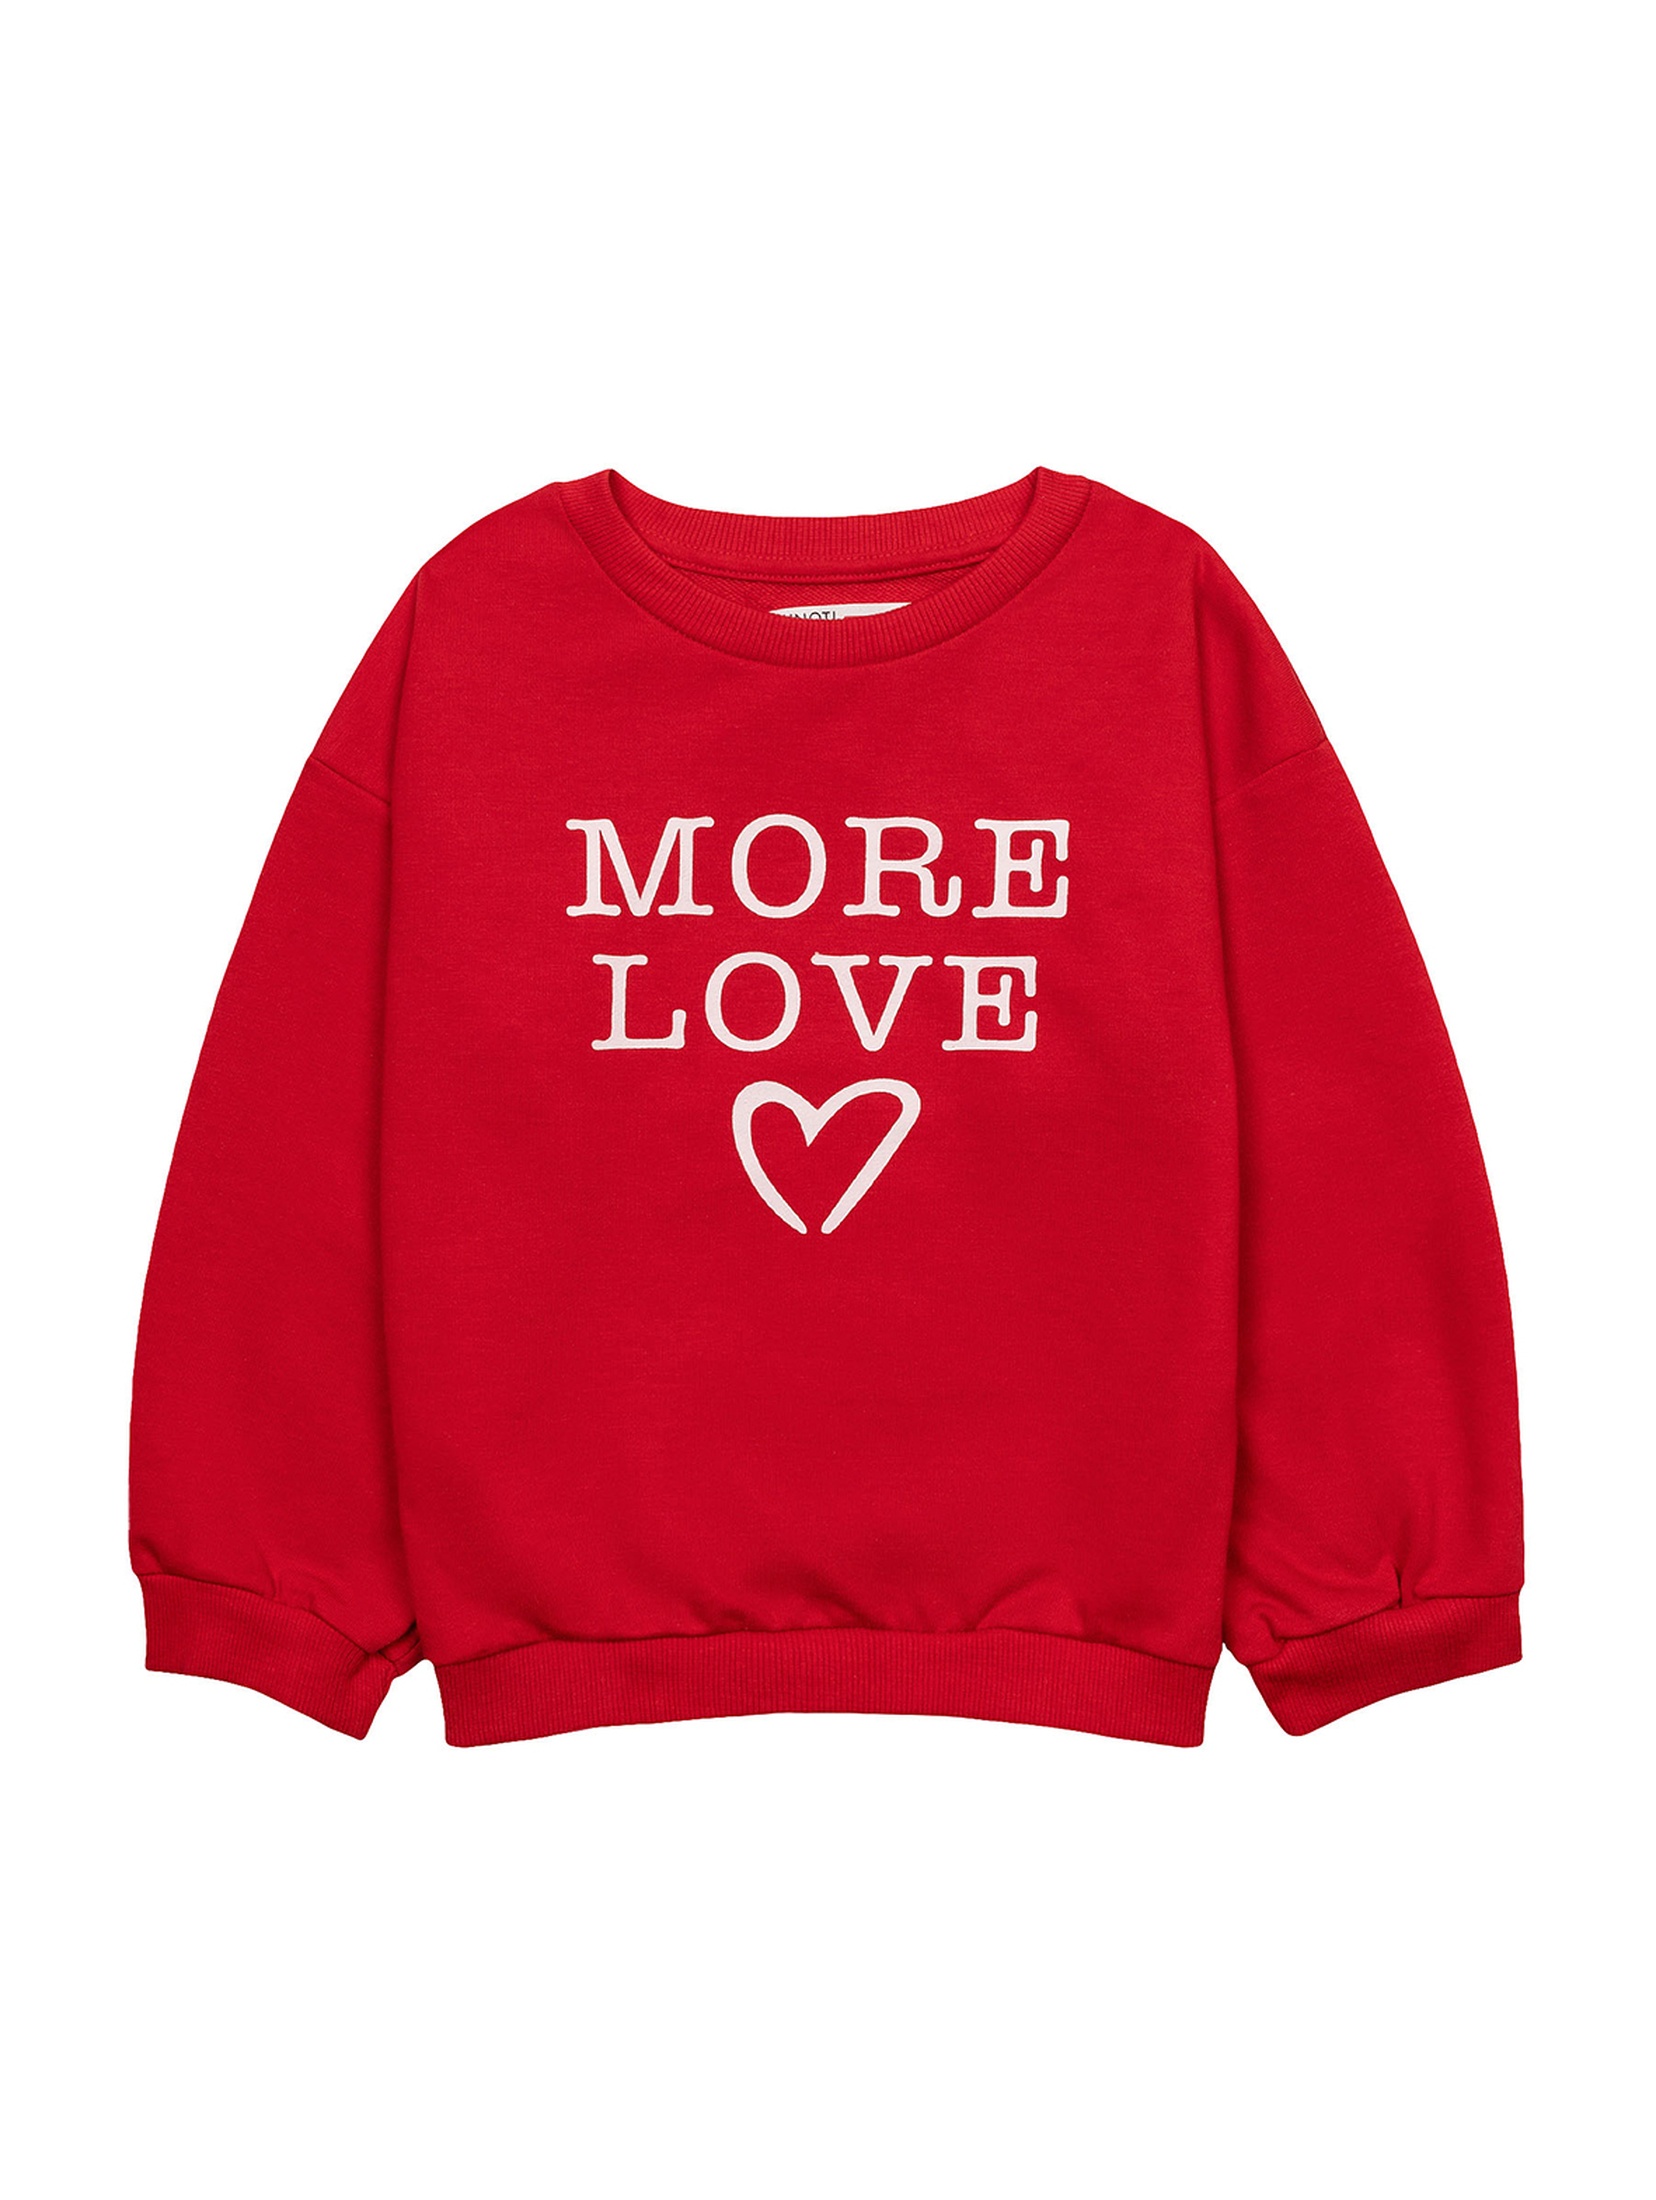 Czerwona bluza dziewczęca z napisem More love